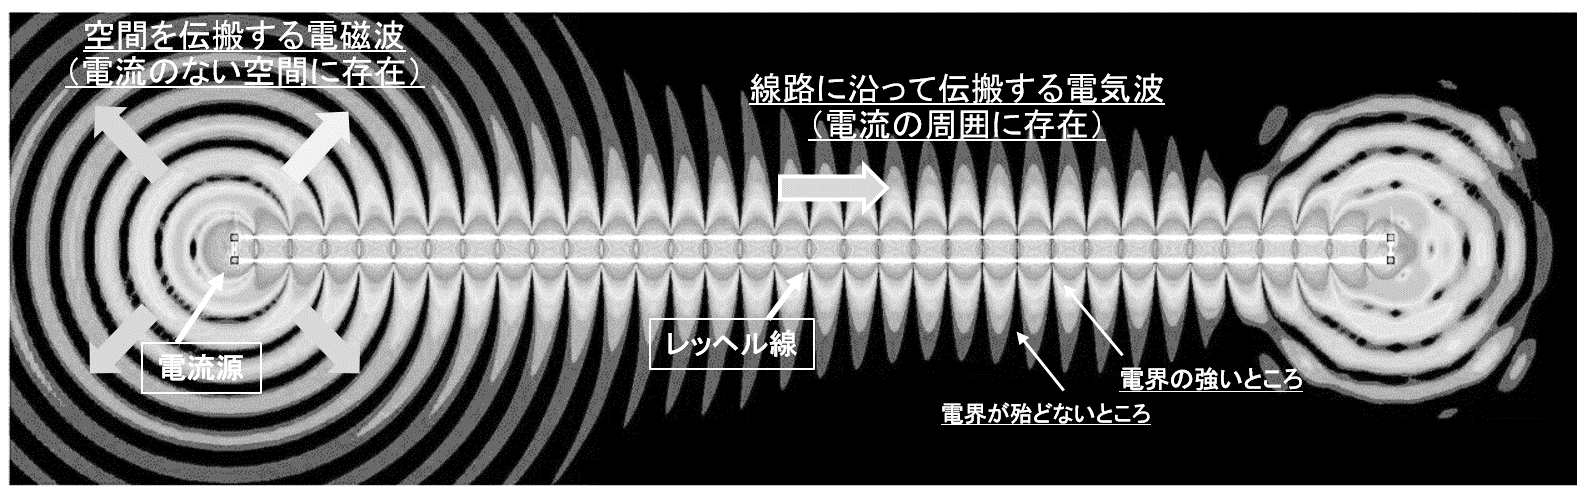 空間の電磁波と線上の電気波